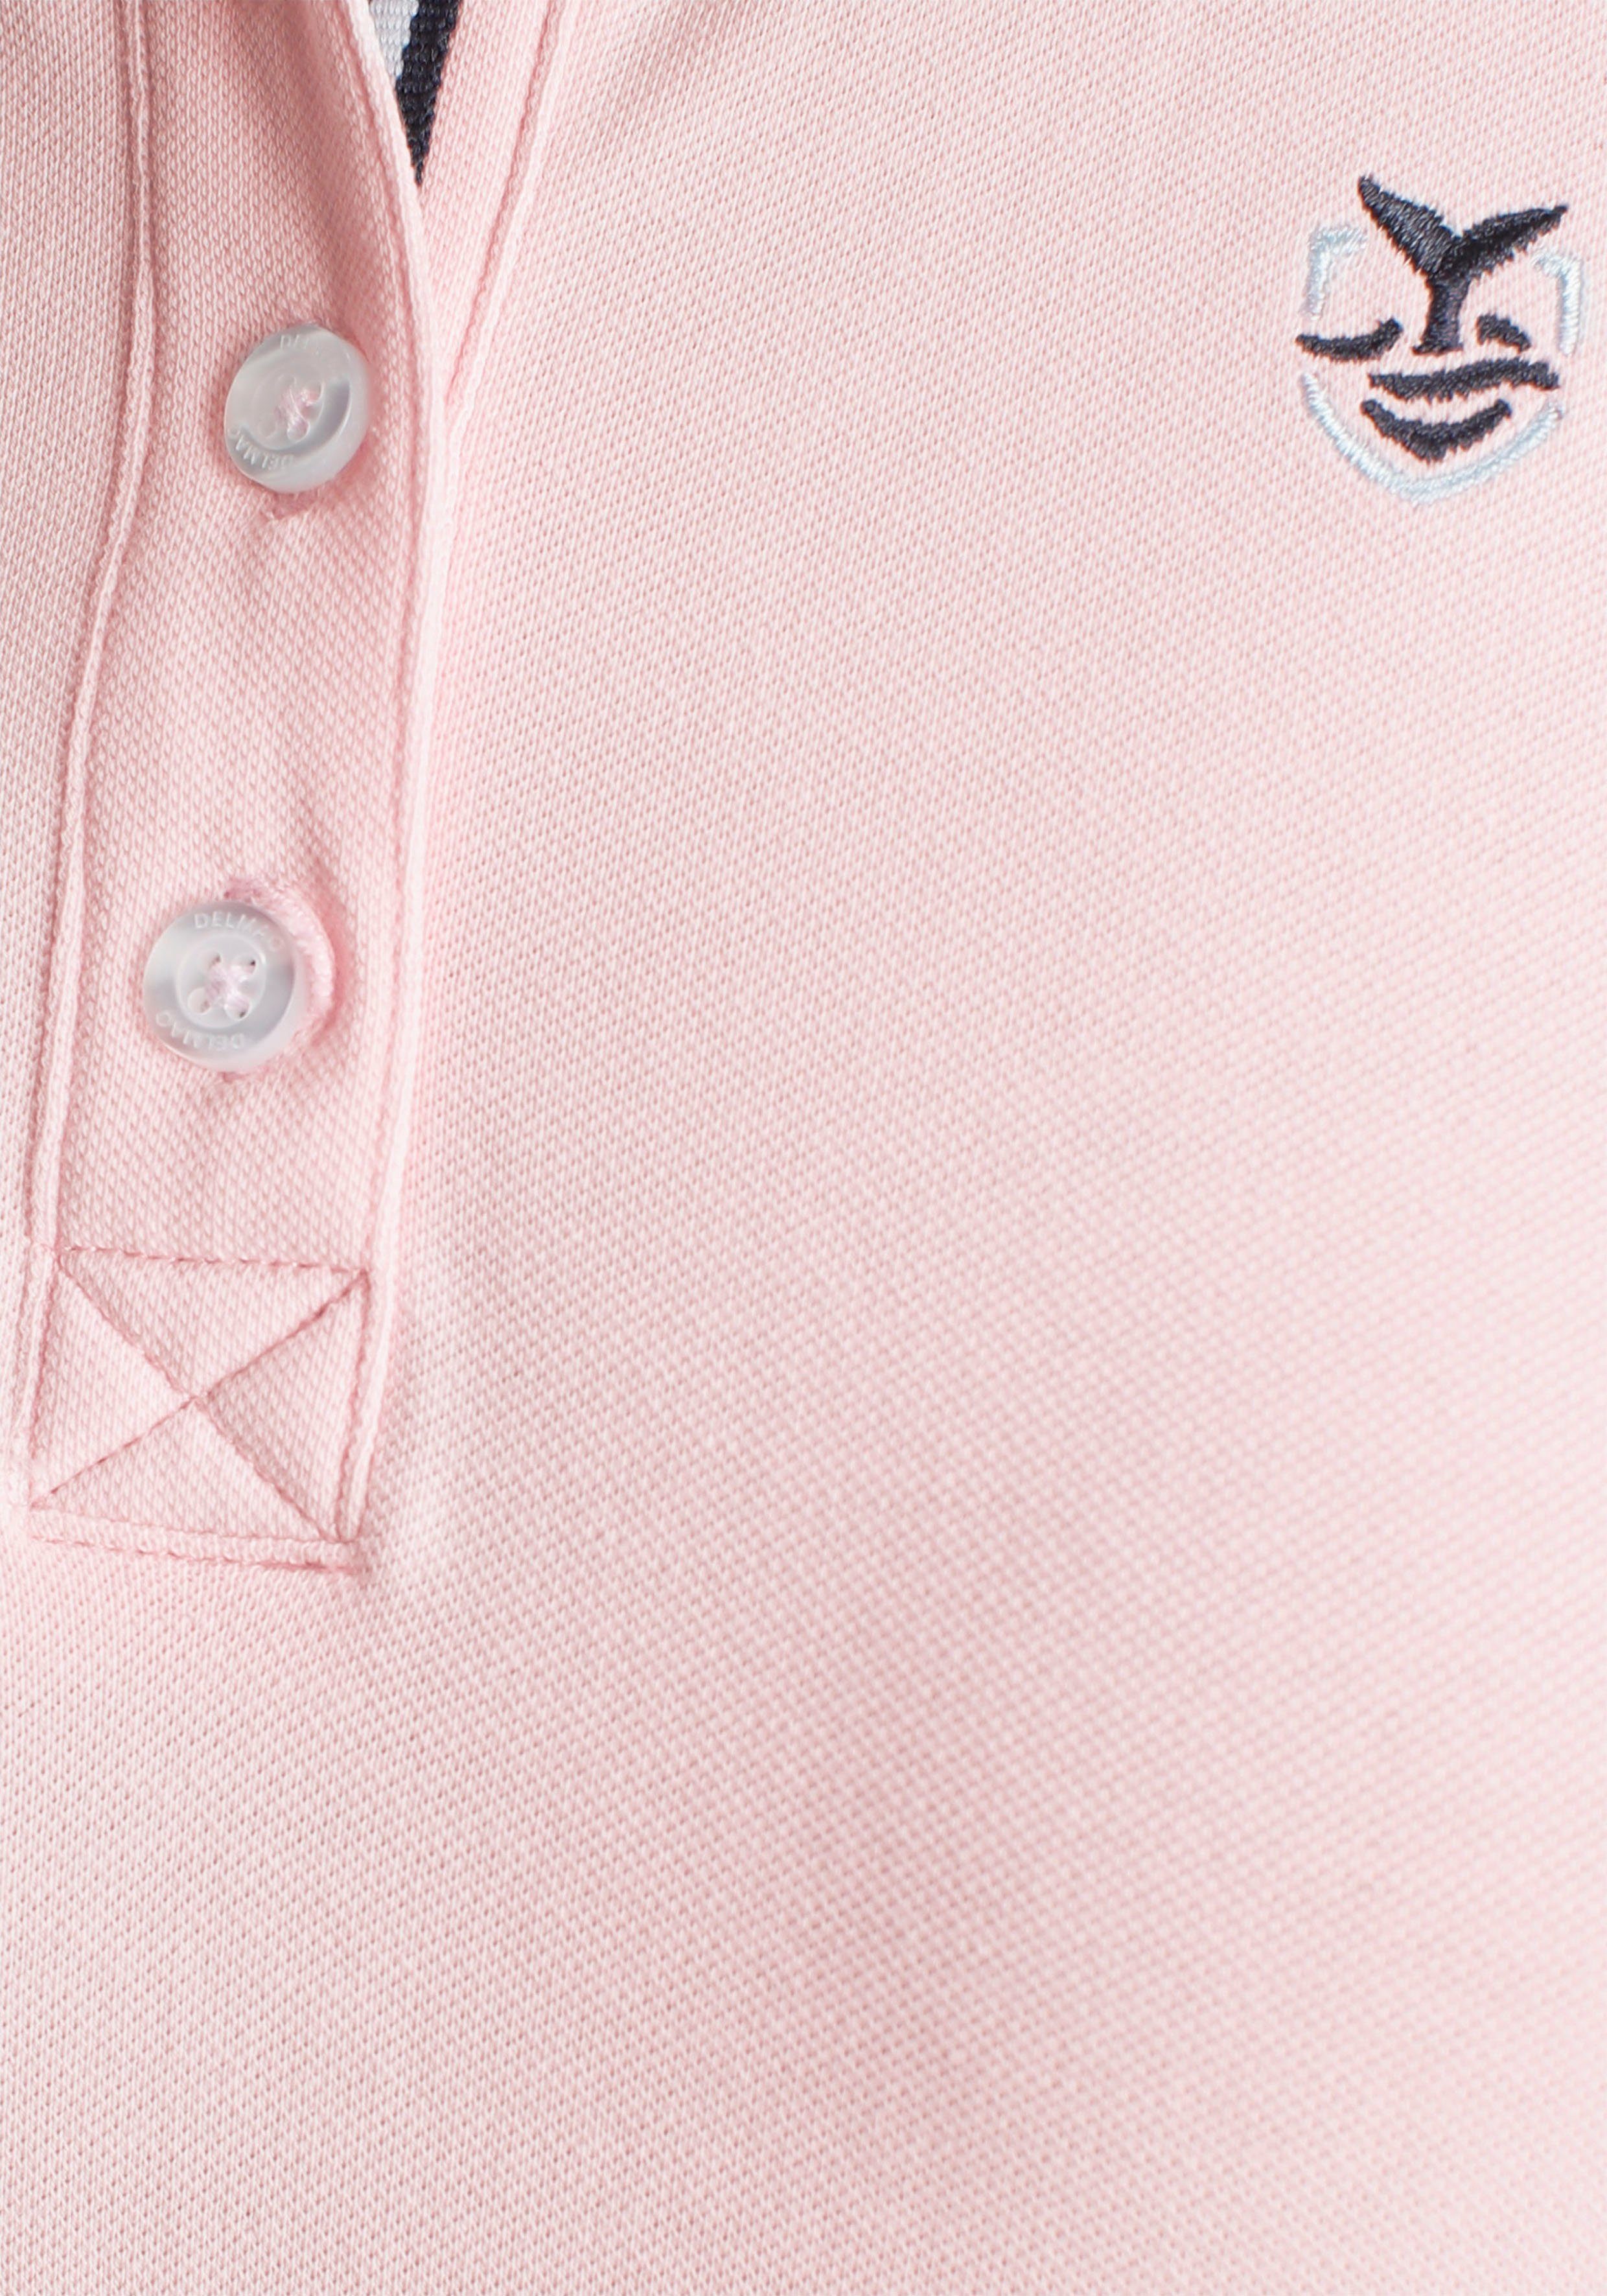 MARKE! verschiedenen - Form in Farben Poloshirt DELMAO rosa in NEUE klassischer